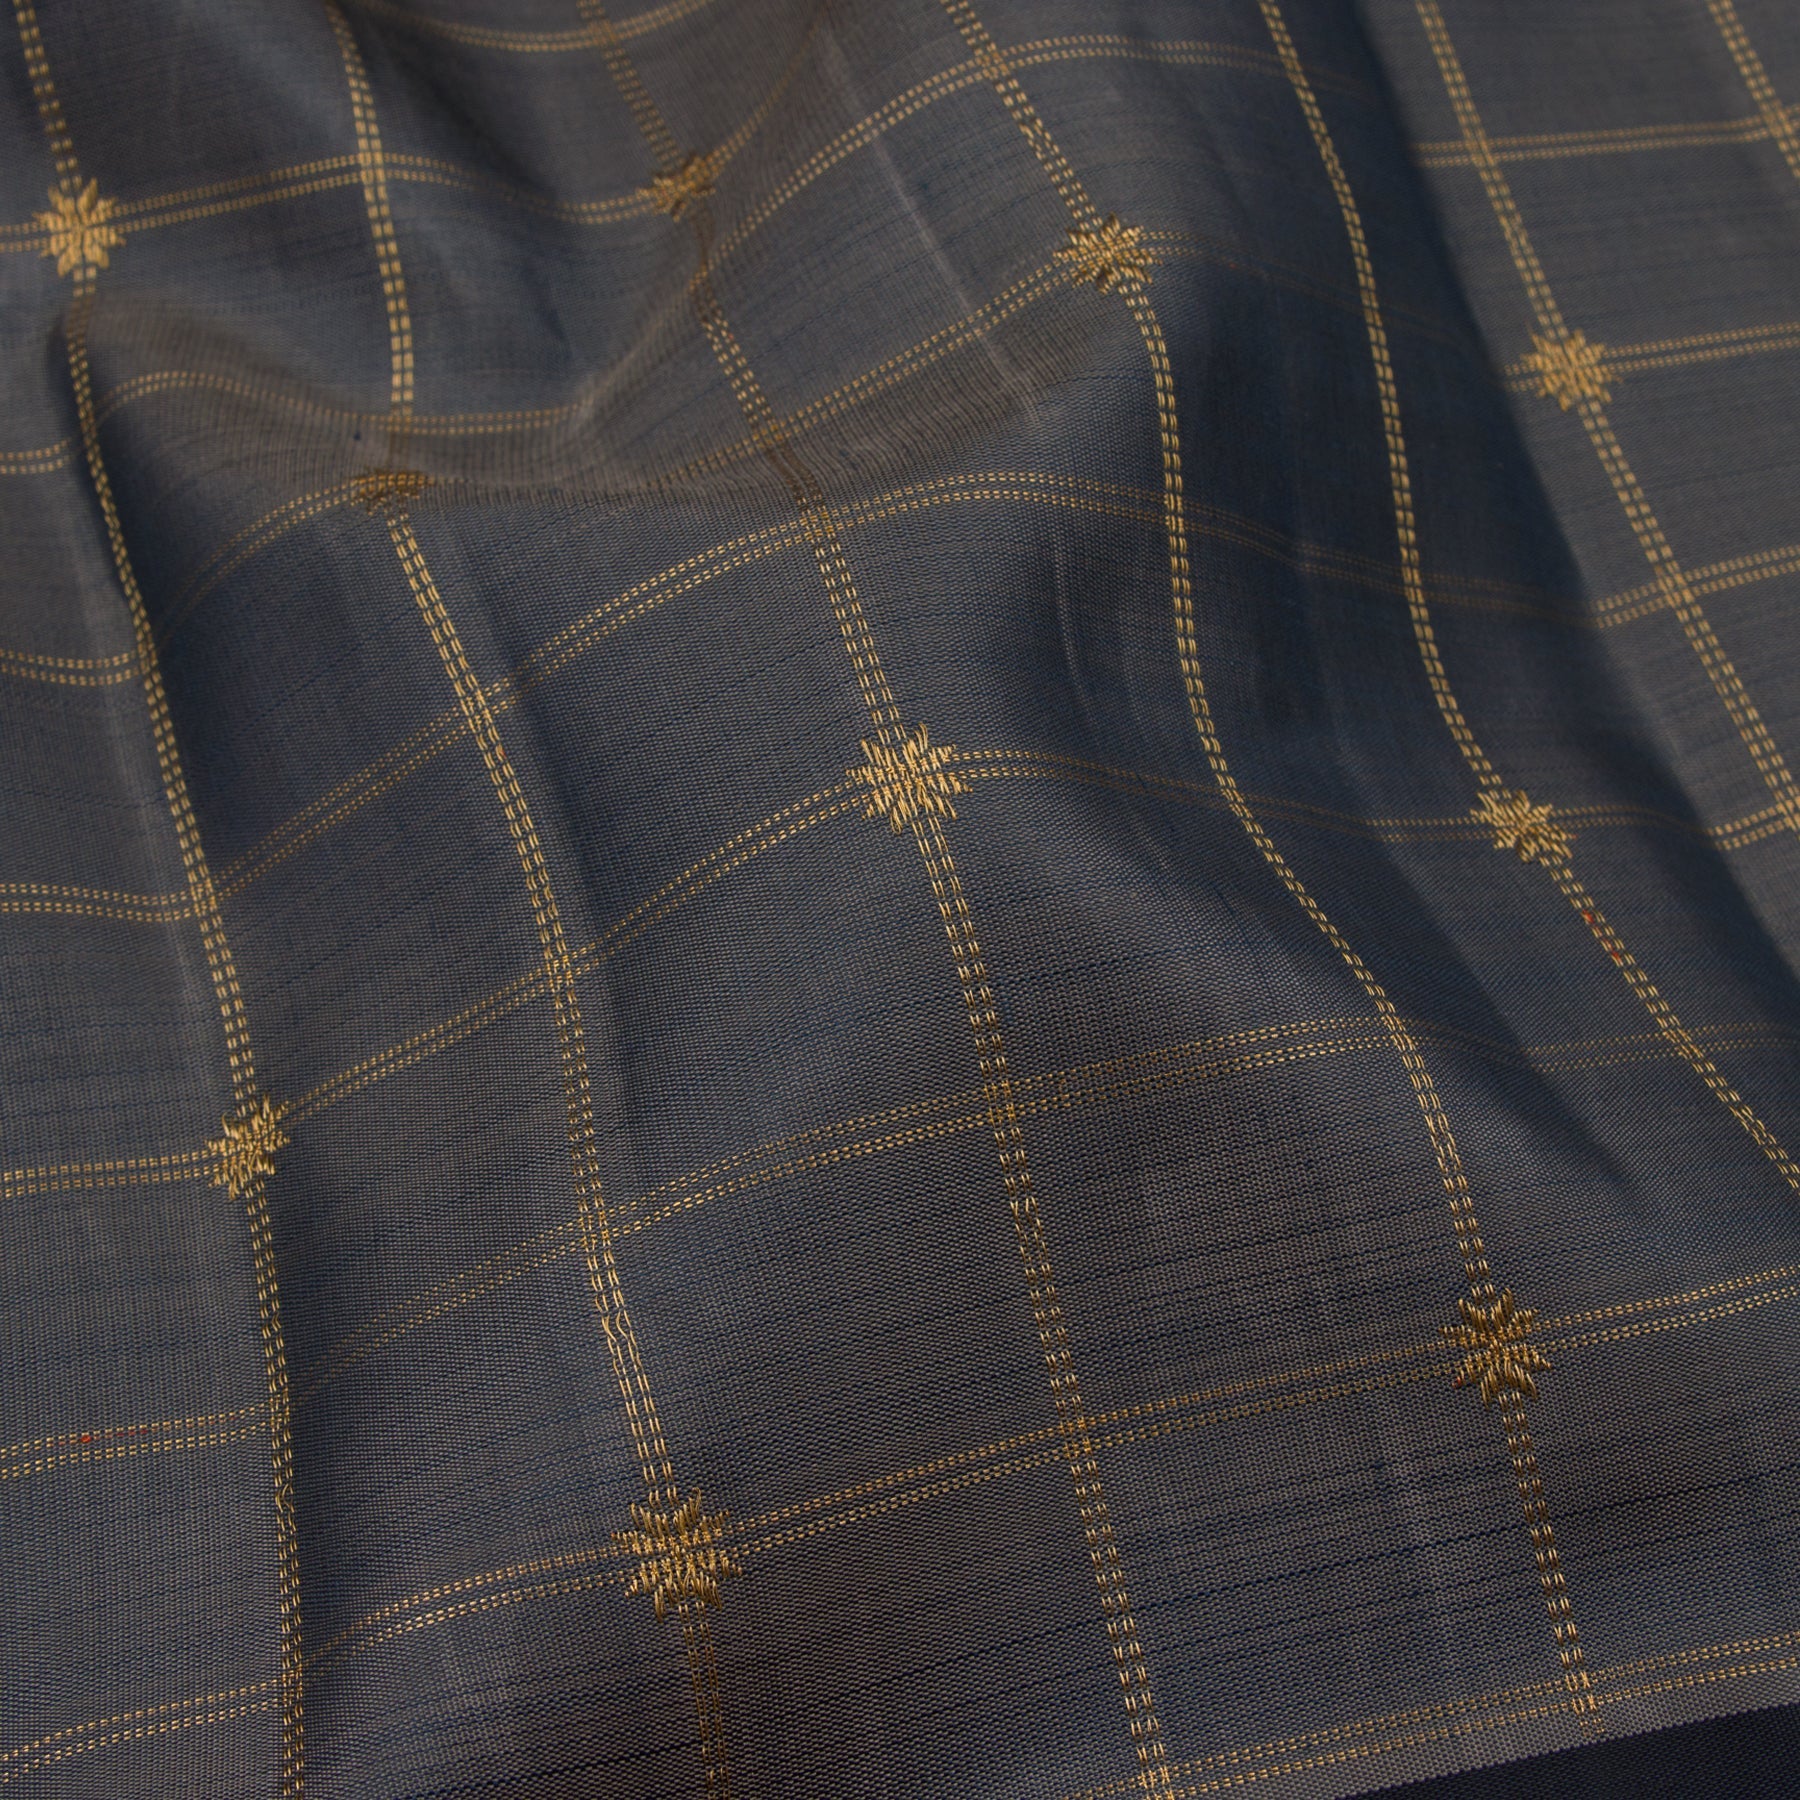 Kanakavalli Kanjivaram Silk Sari 22-595-HS001-10924 - Fabric View